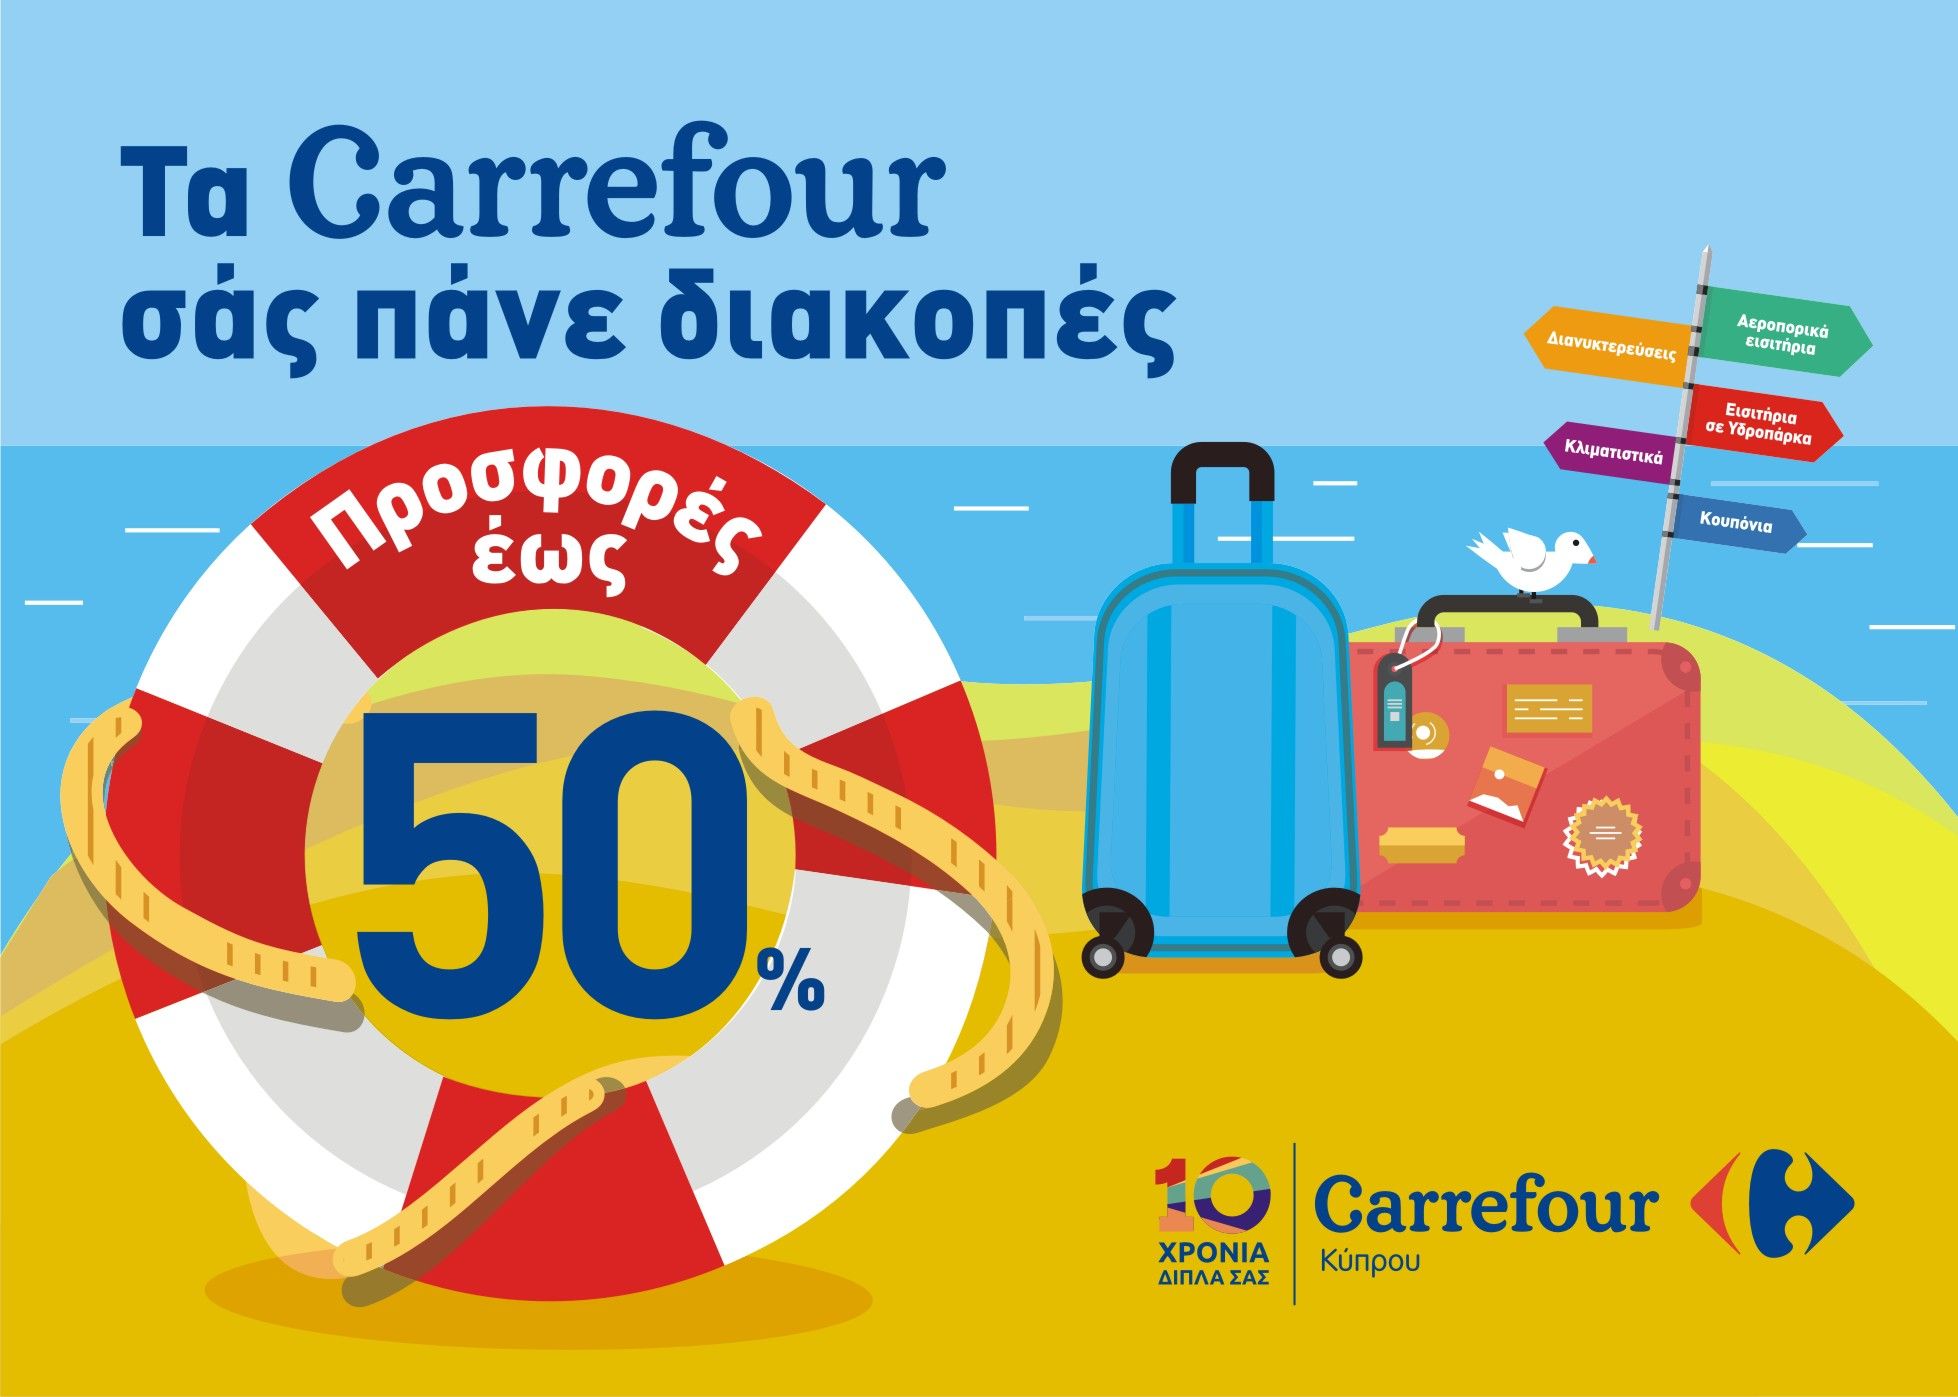 Ολοκληρώθηκε με επιτυχία ο μεγάλος καλοκαιρινός διαγωνισμός των υπεραγορών  Carrefour Κύπρου | Ι LOVE STYLE